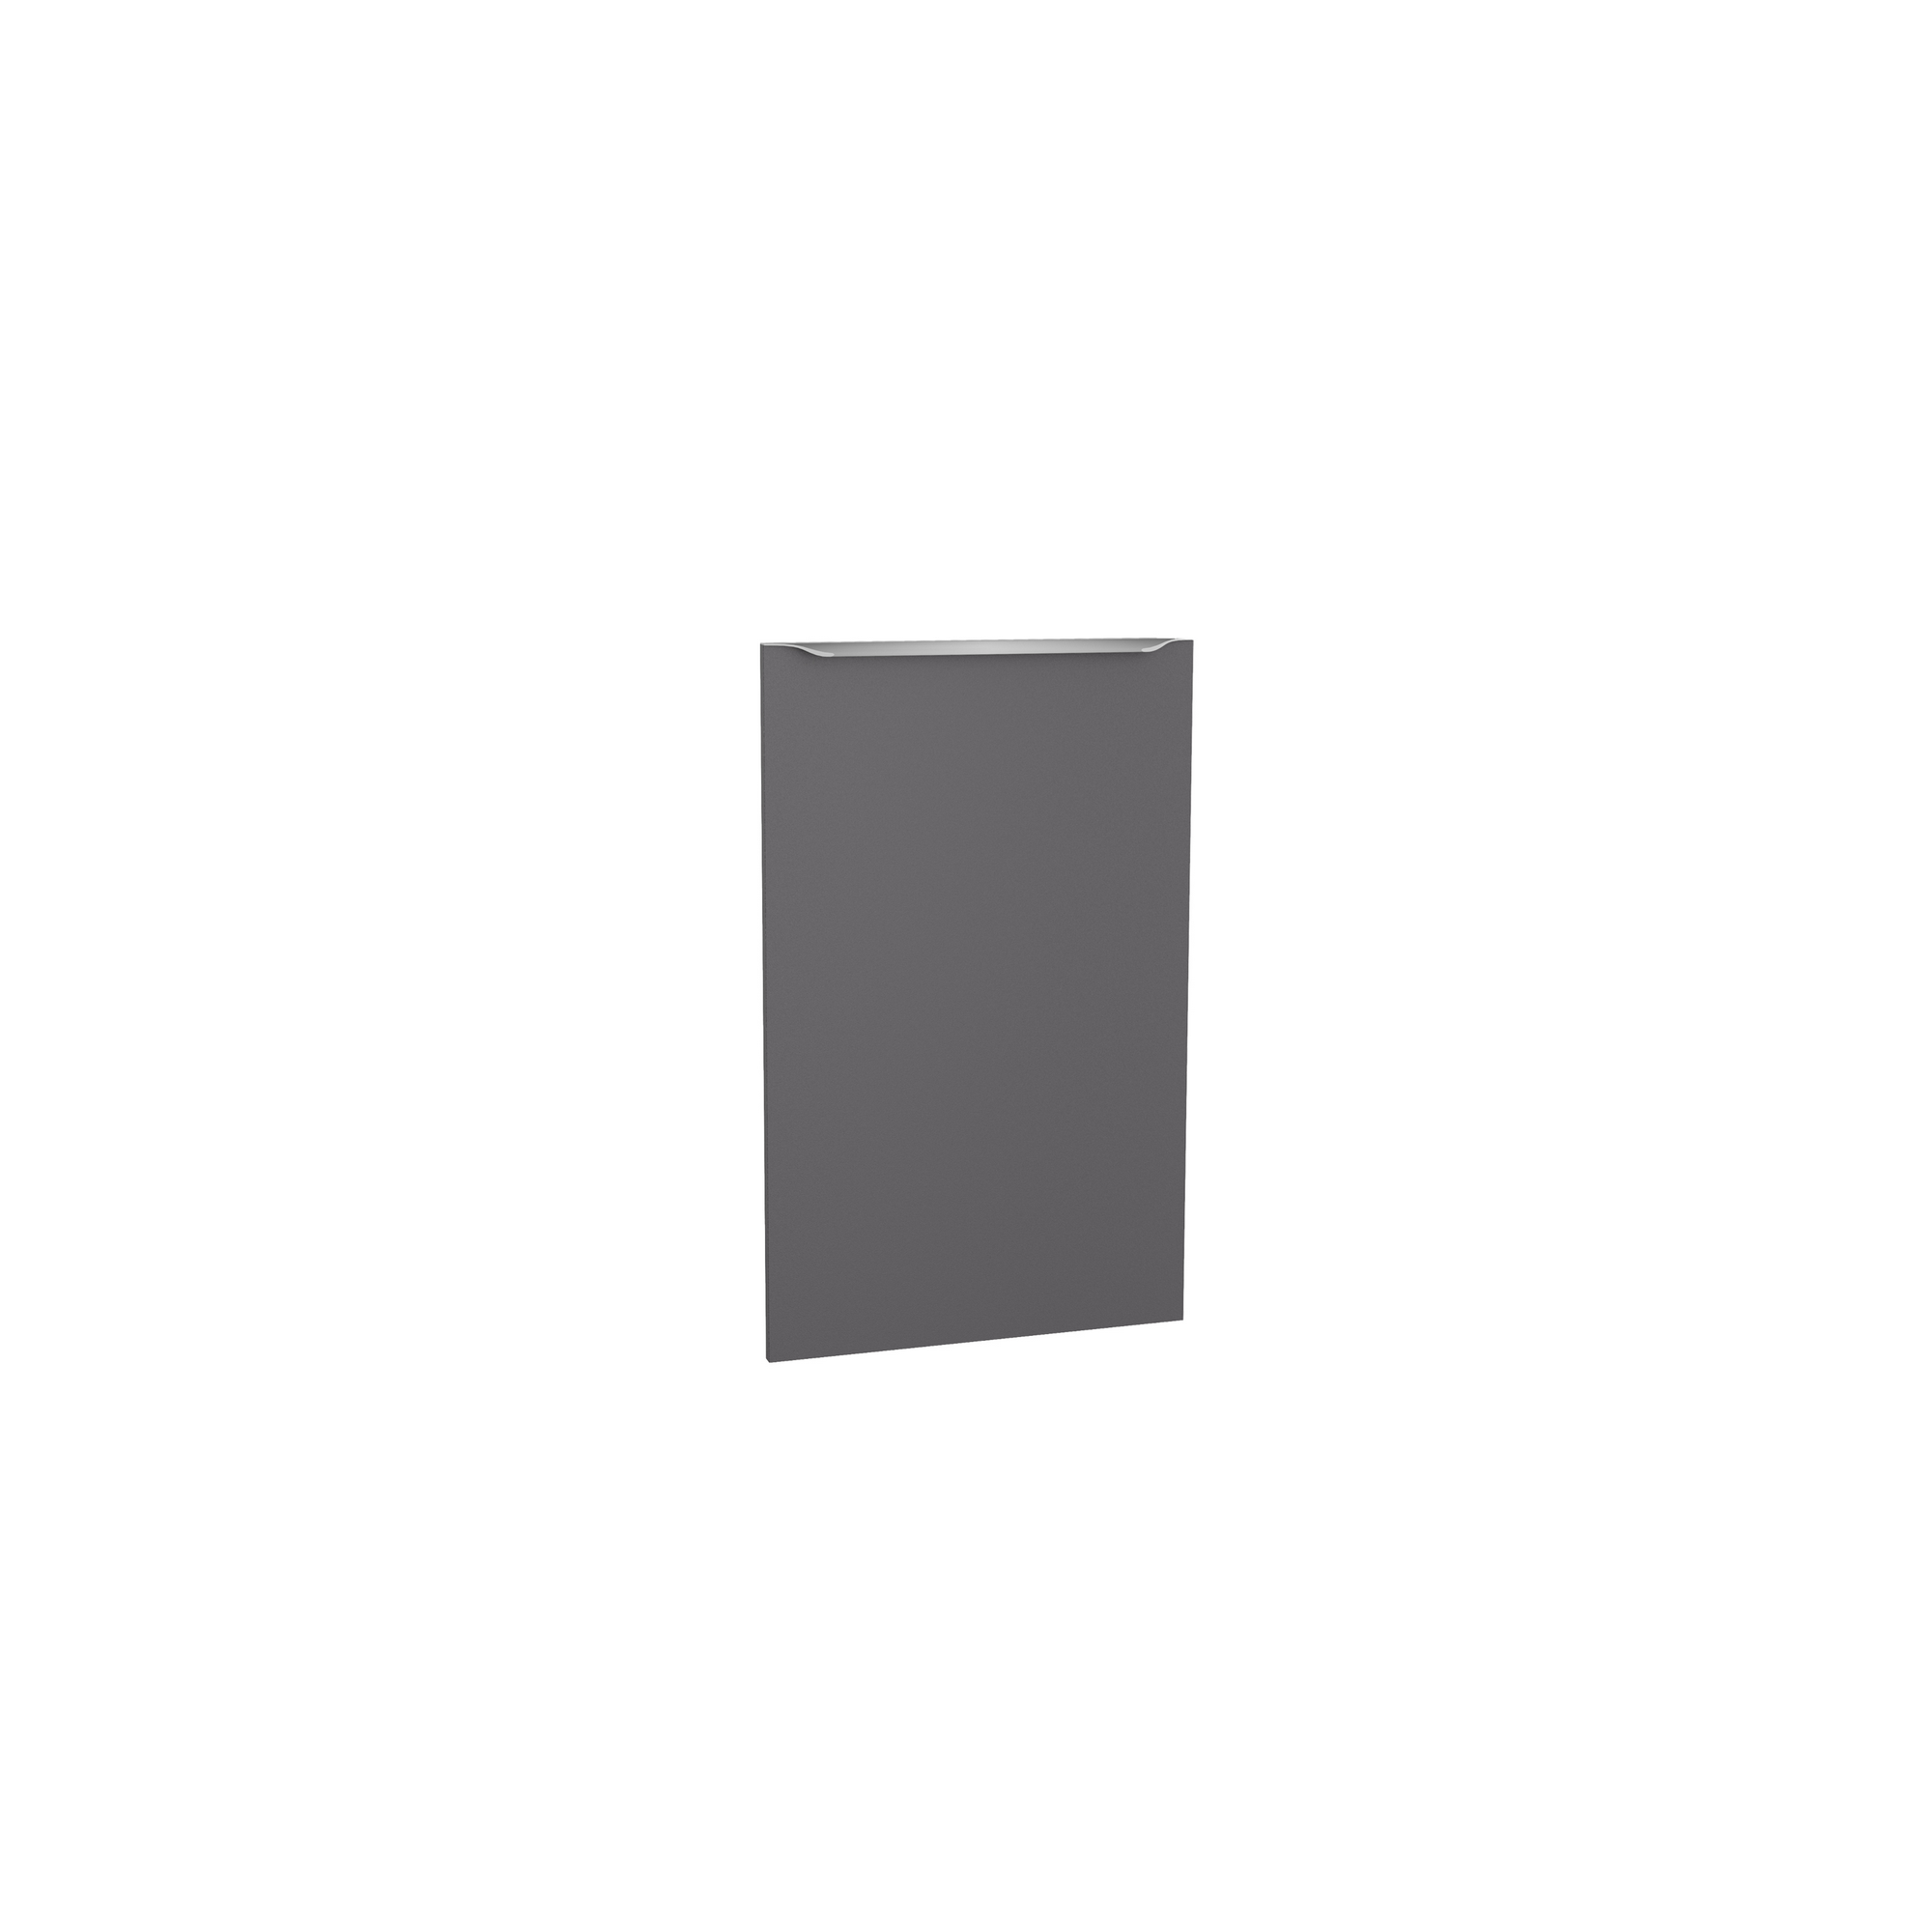 Tür für vollintegrierten Geschirrspüler 'Optikomfort Linus984' anthrazit 44,6 x 70 x 1,6 cm + product picture